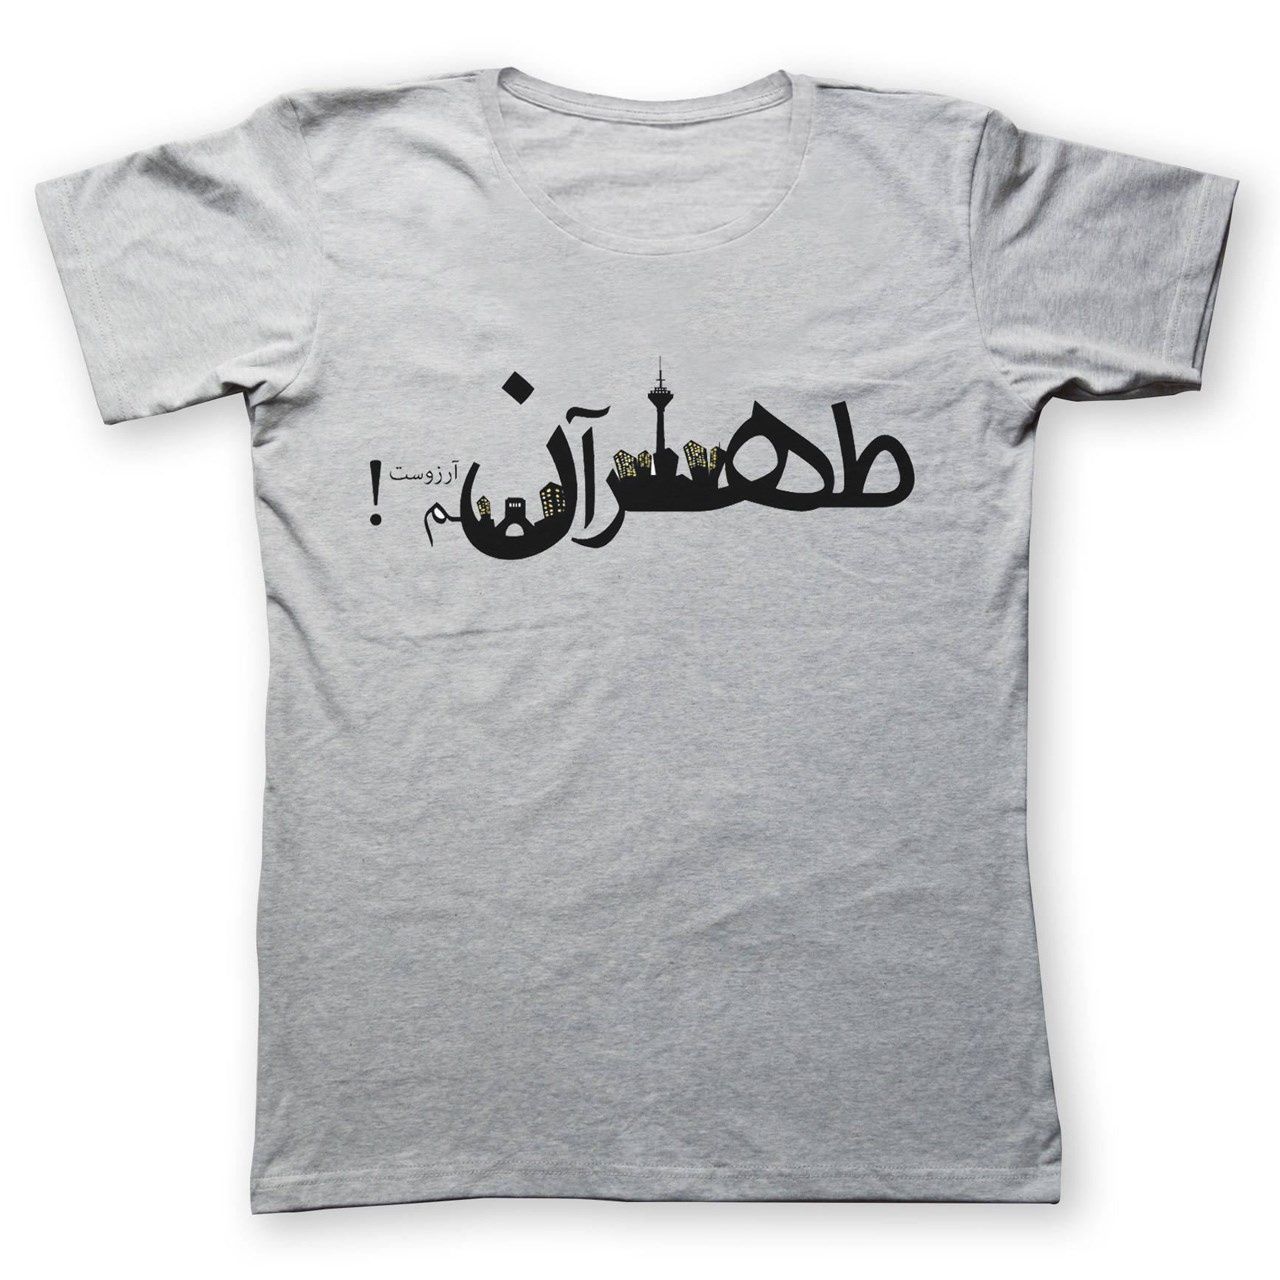 تی شرت به رسم طرح طهران کد 207 -  - 1